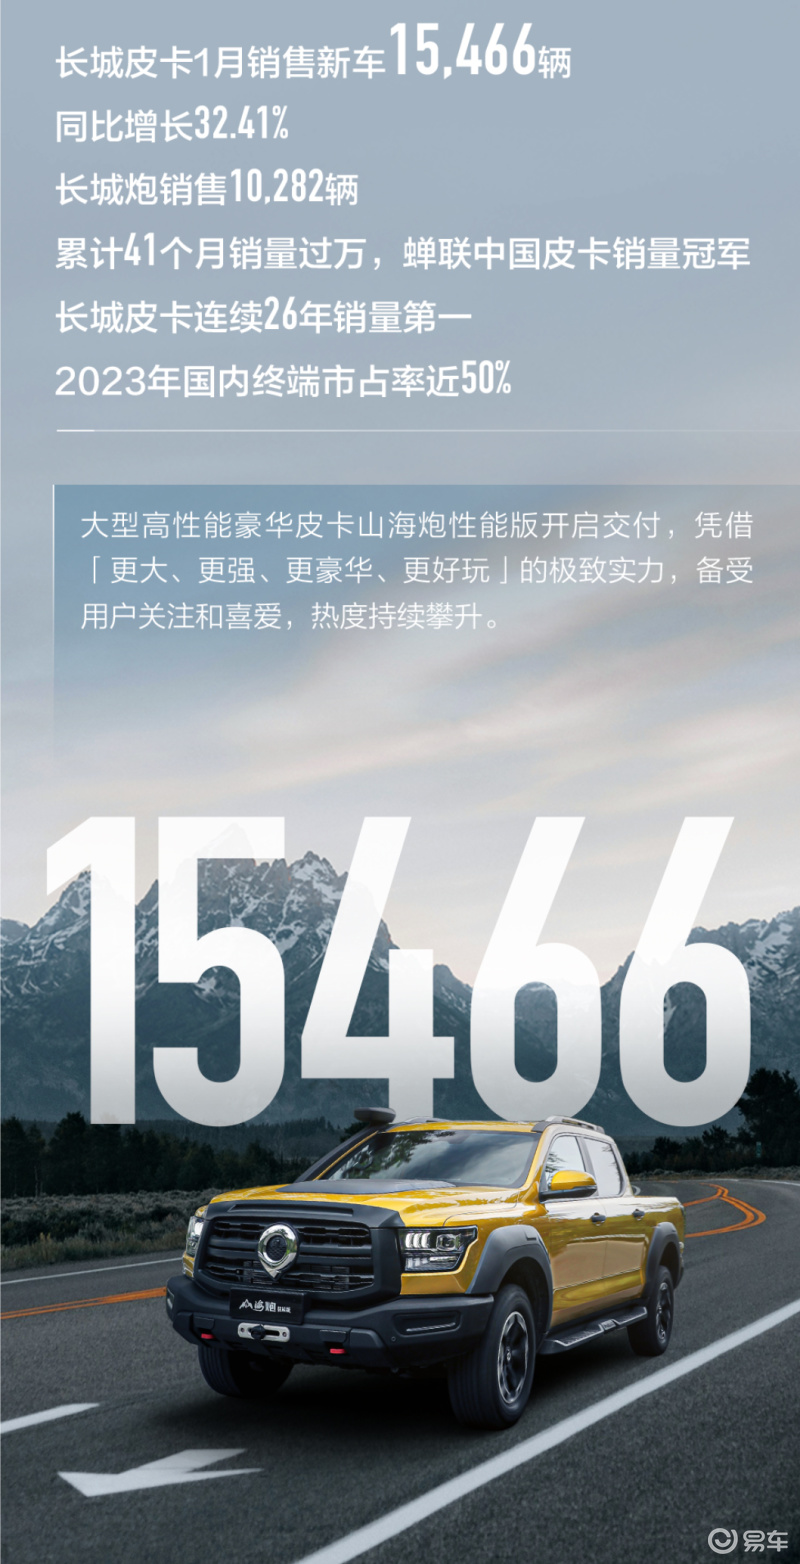 长城汽车1月销量104030辆 同比增长69.06%插图4